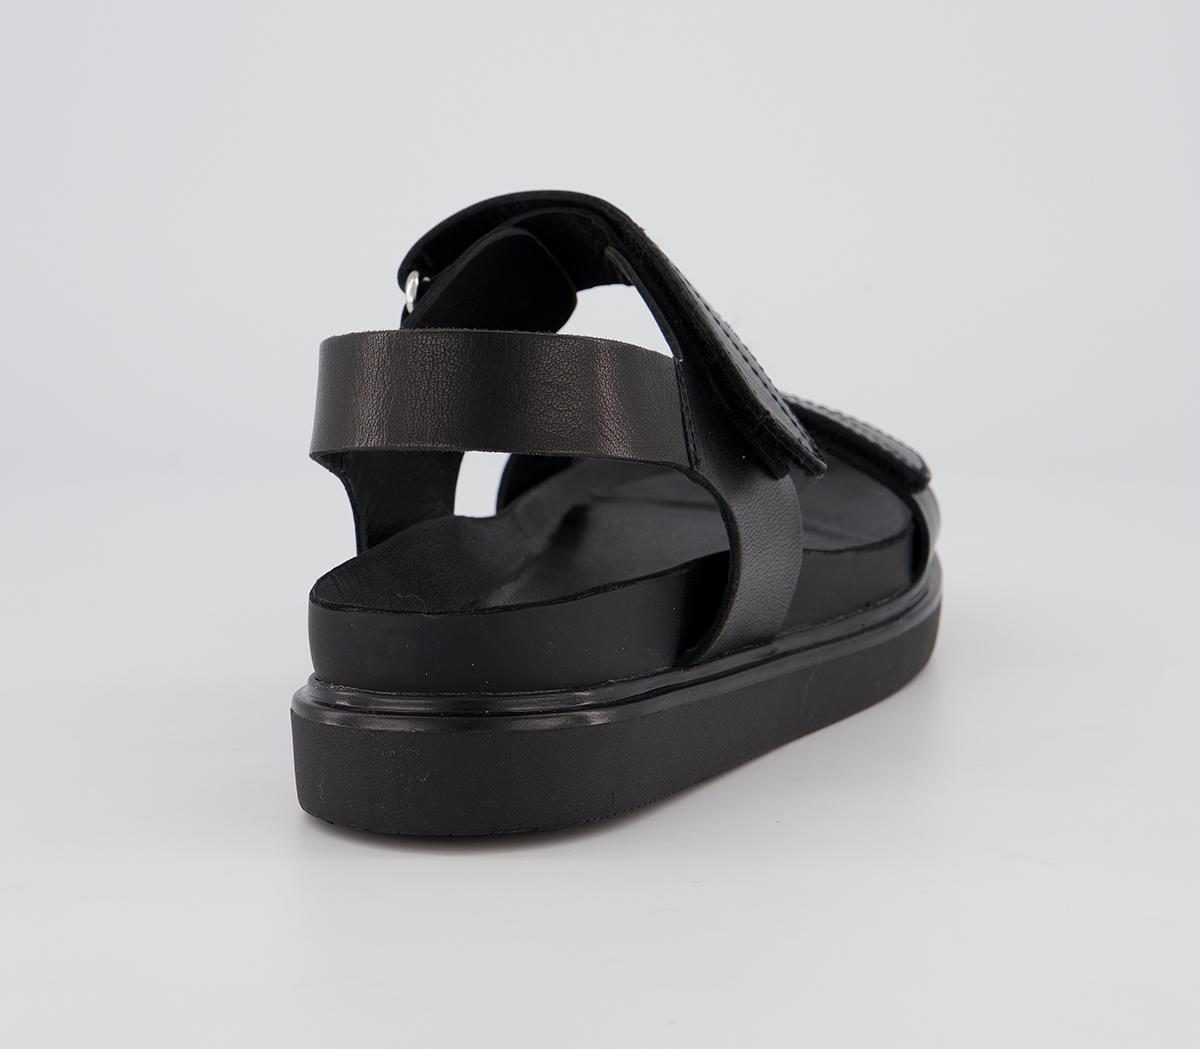 Vagabond Shoemakers Erin Double Strap Sandals Black - Women’s Sandals